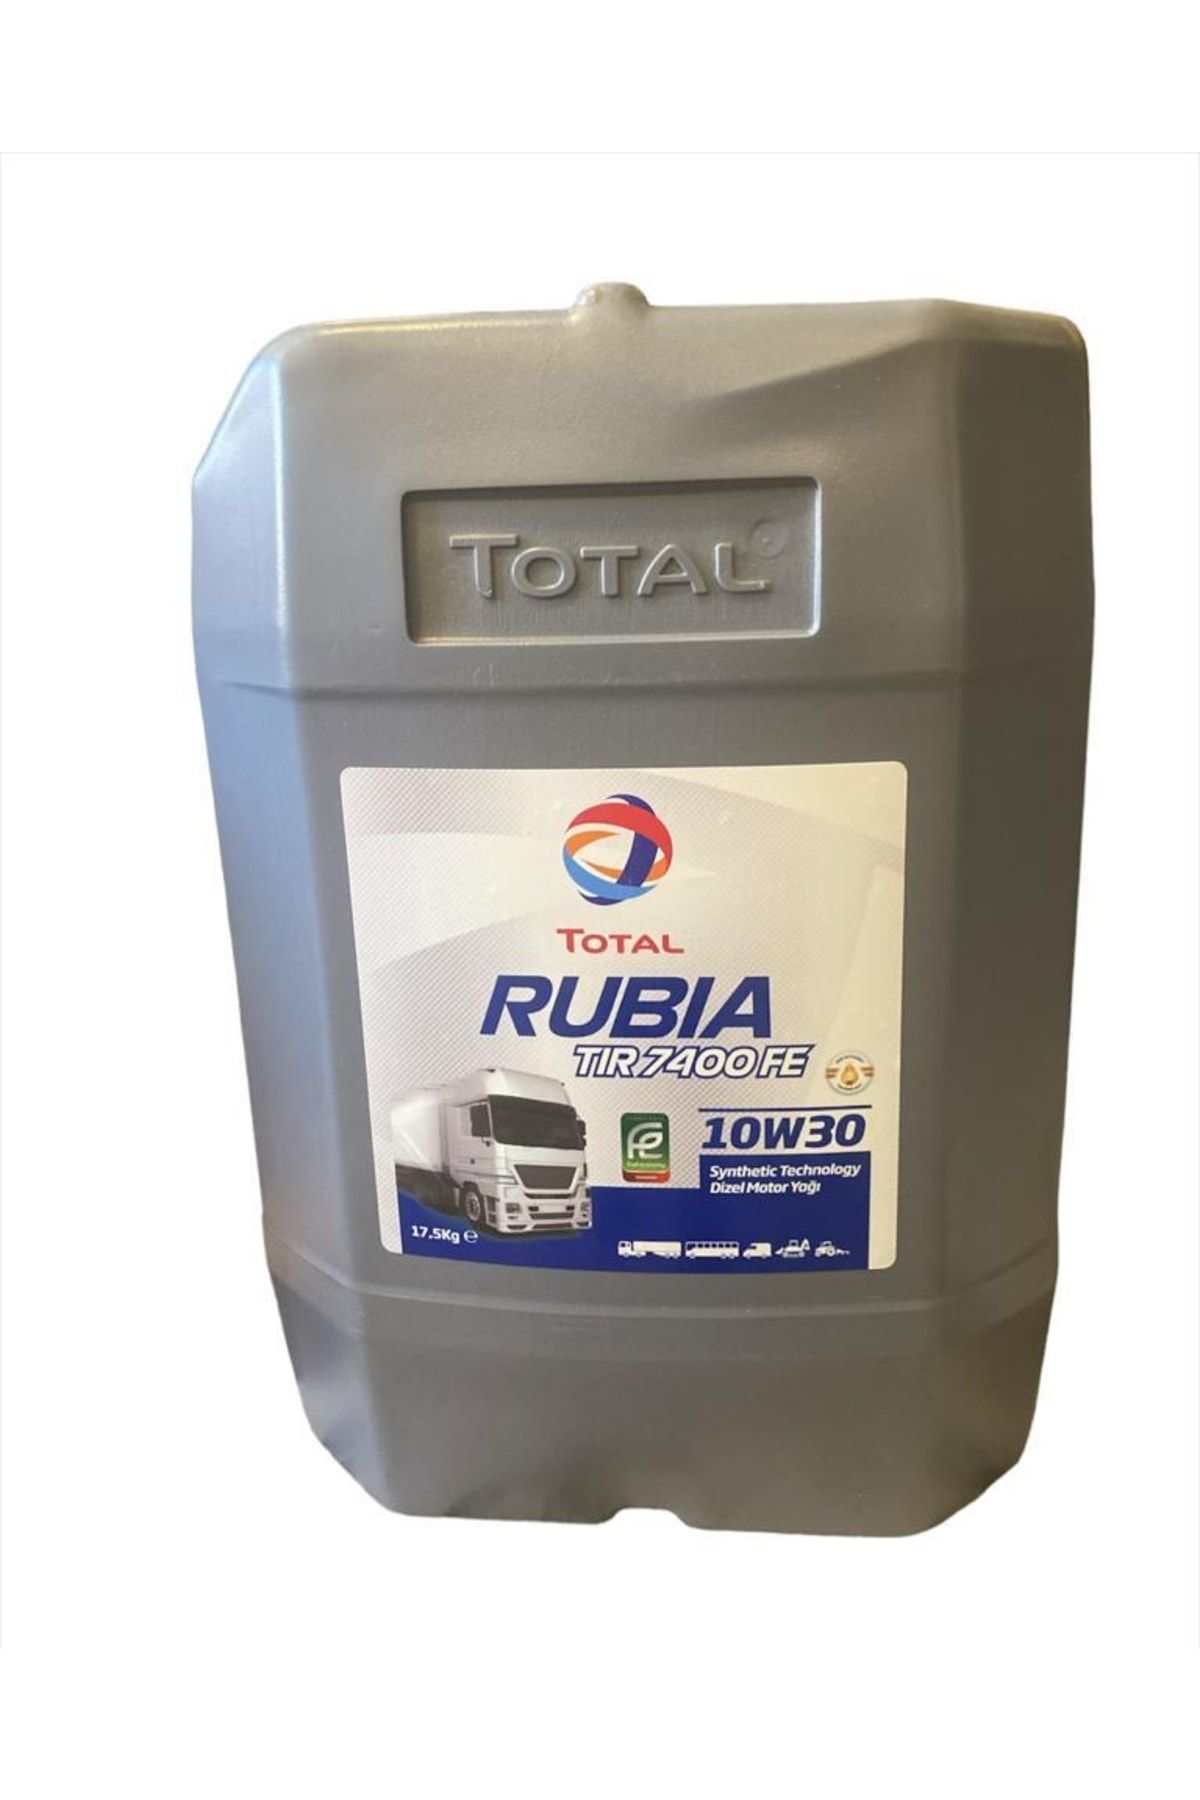 Total Rubia 10w30 Motor Yağı 7400 17,5 Kg.